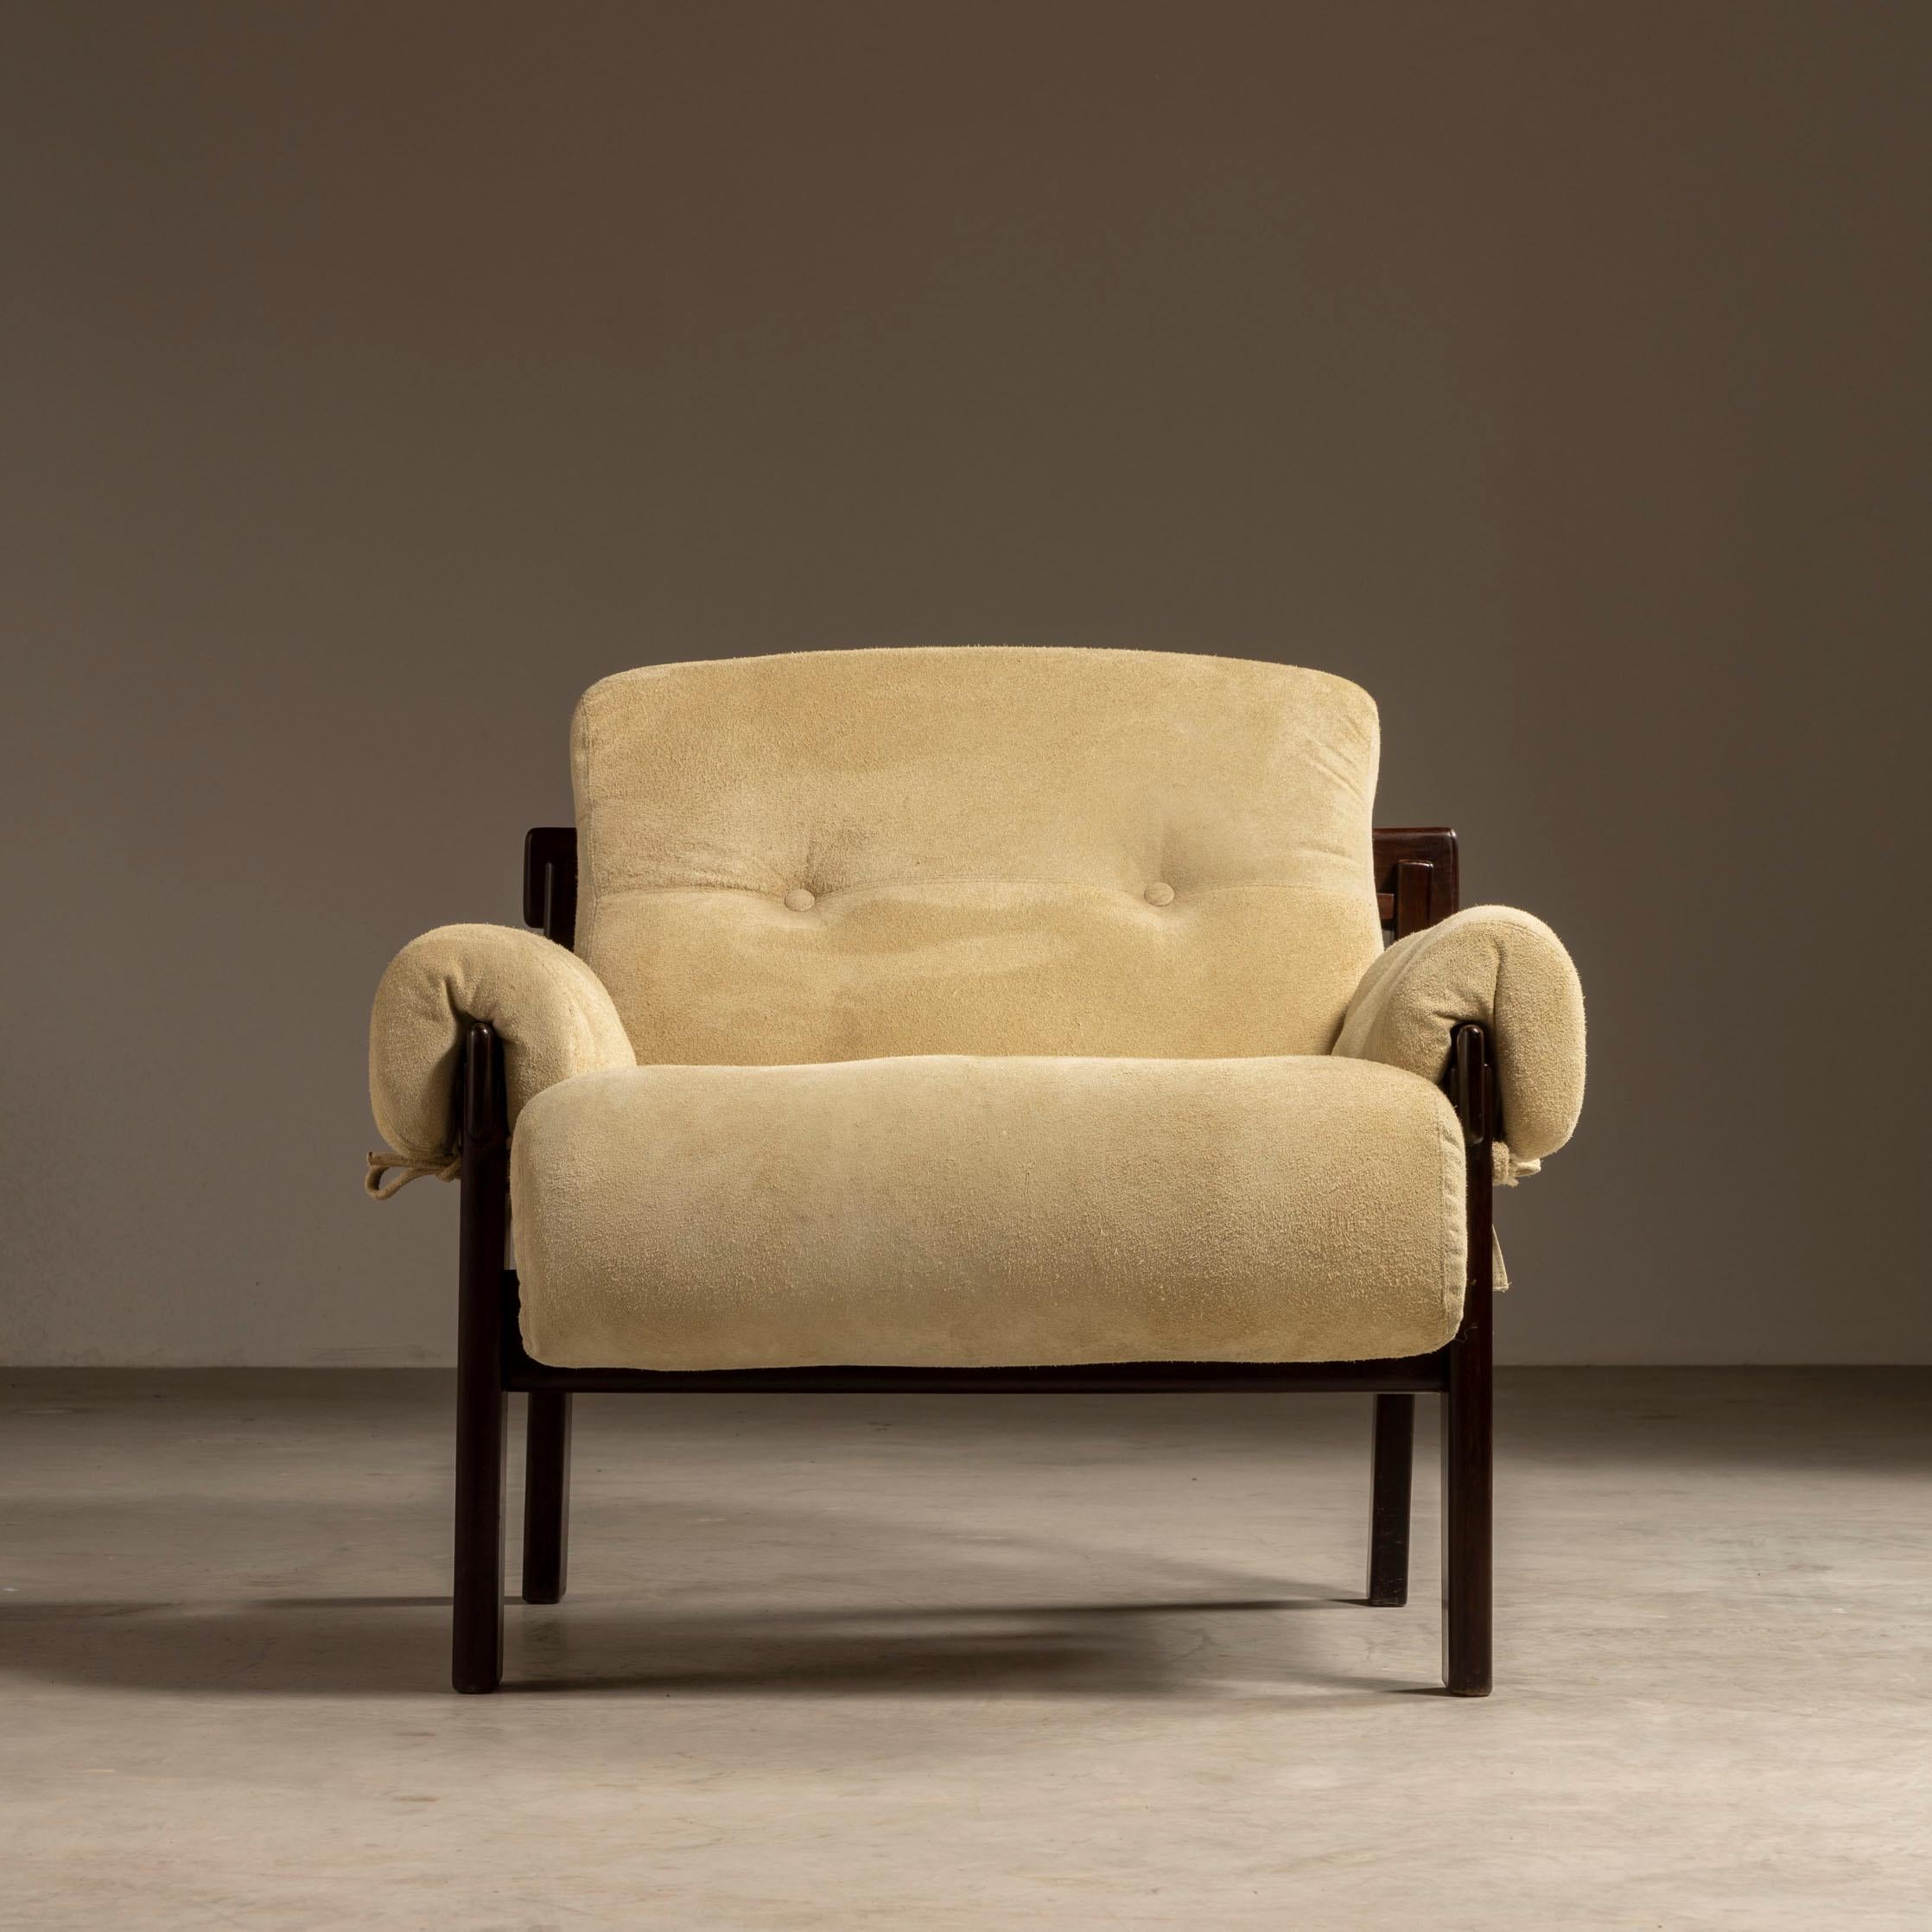 Ces exquises chaises longues Copa, conçues par le maître Jean Gillon, témoignent de son génie à créer des meubles à la fois fonctionnels et beaux. La structure, réalisée en bois dur brésilien massif, présente un design minimaliste et des équipements